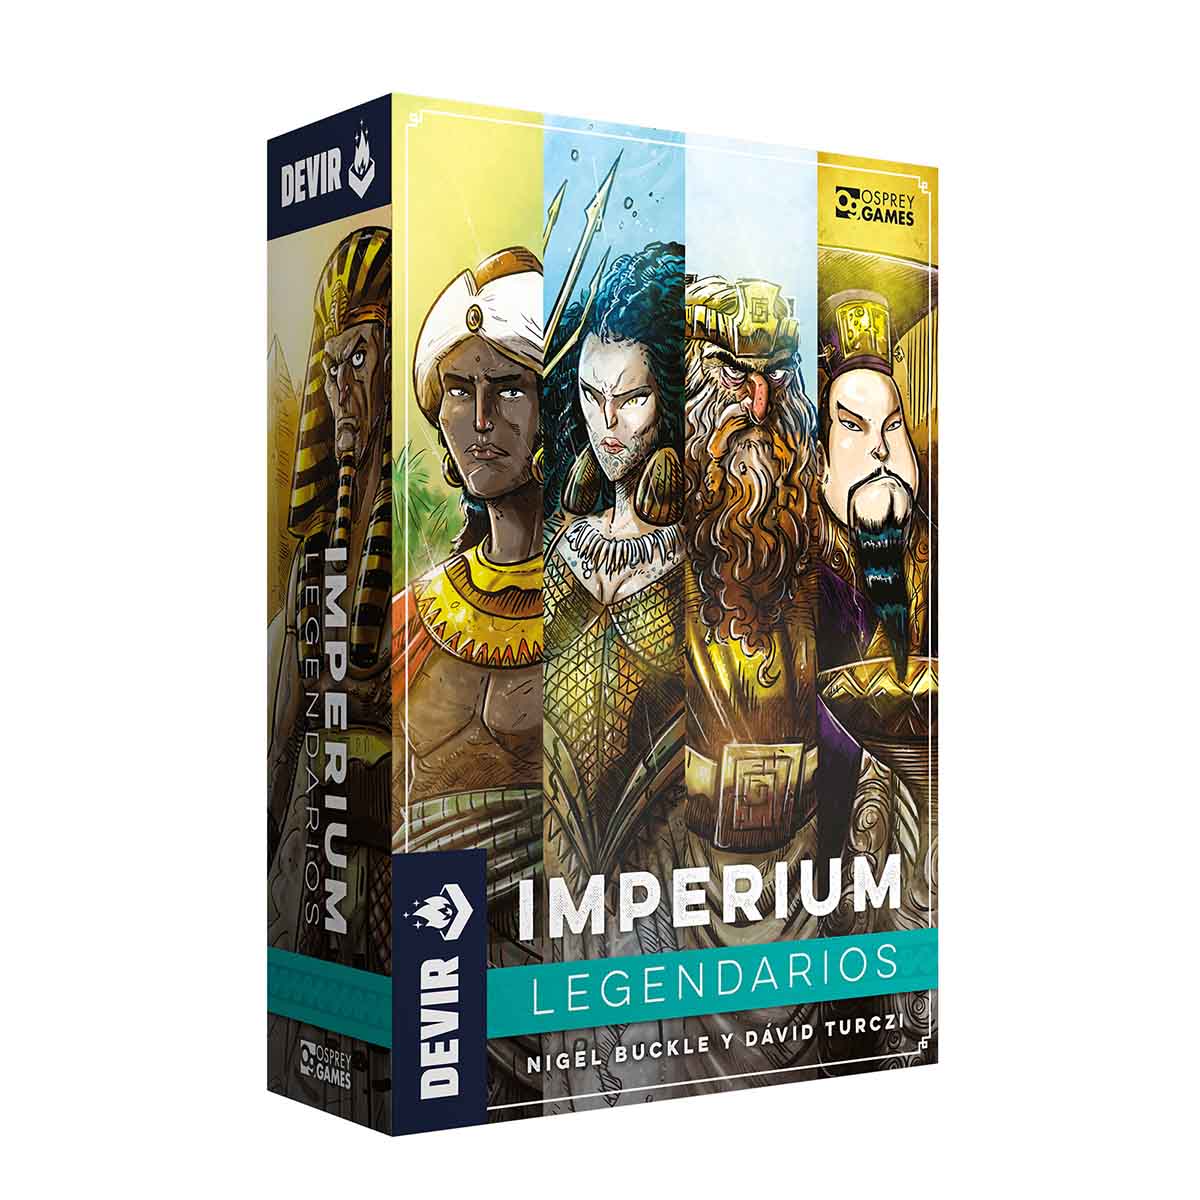 Imperium_Legendarios_1200x1200_box